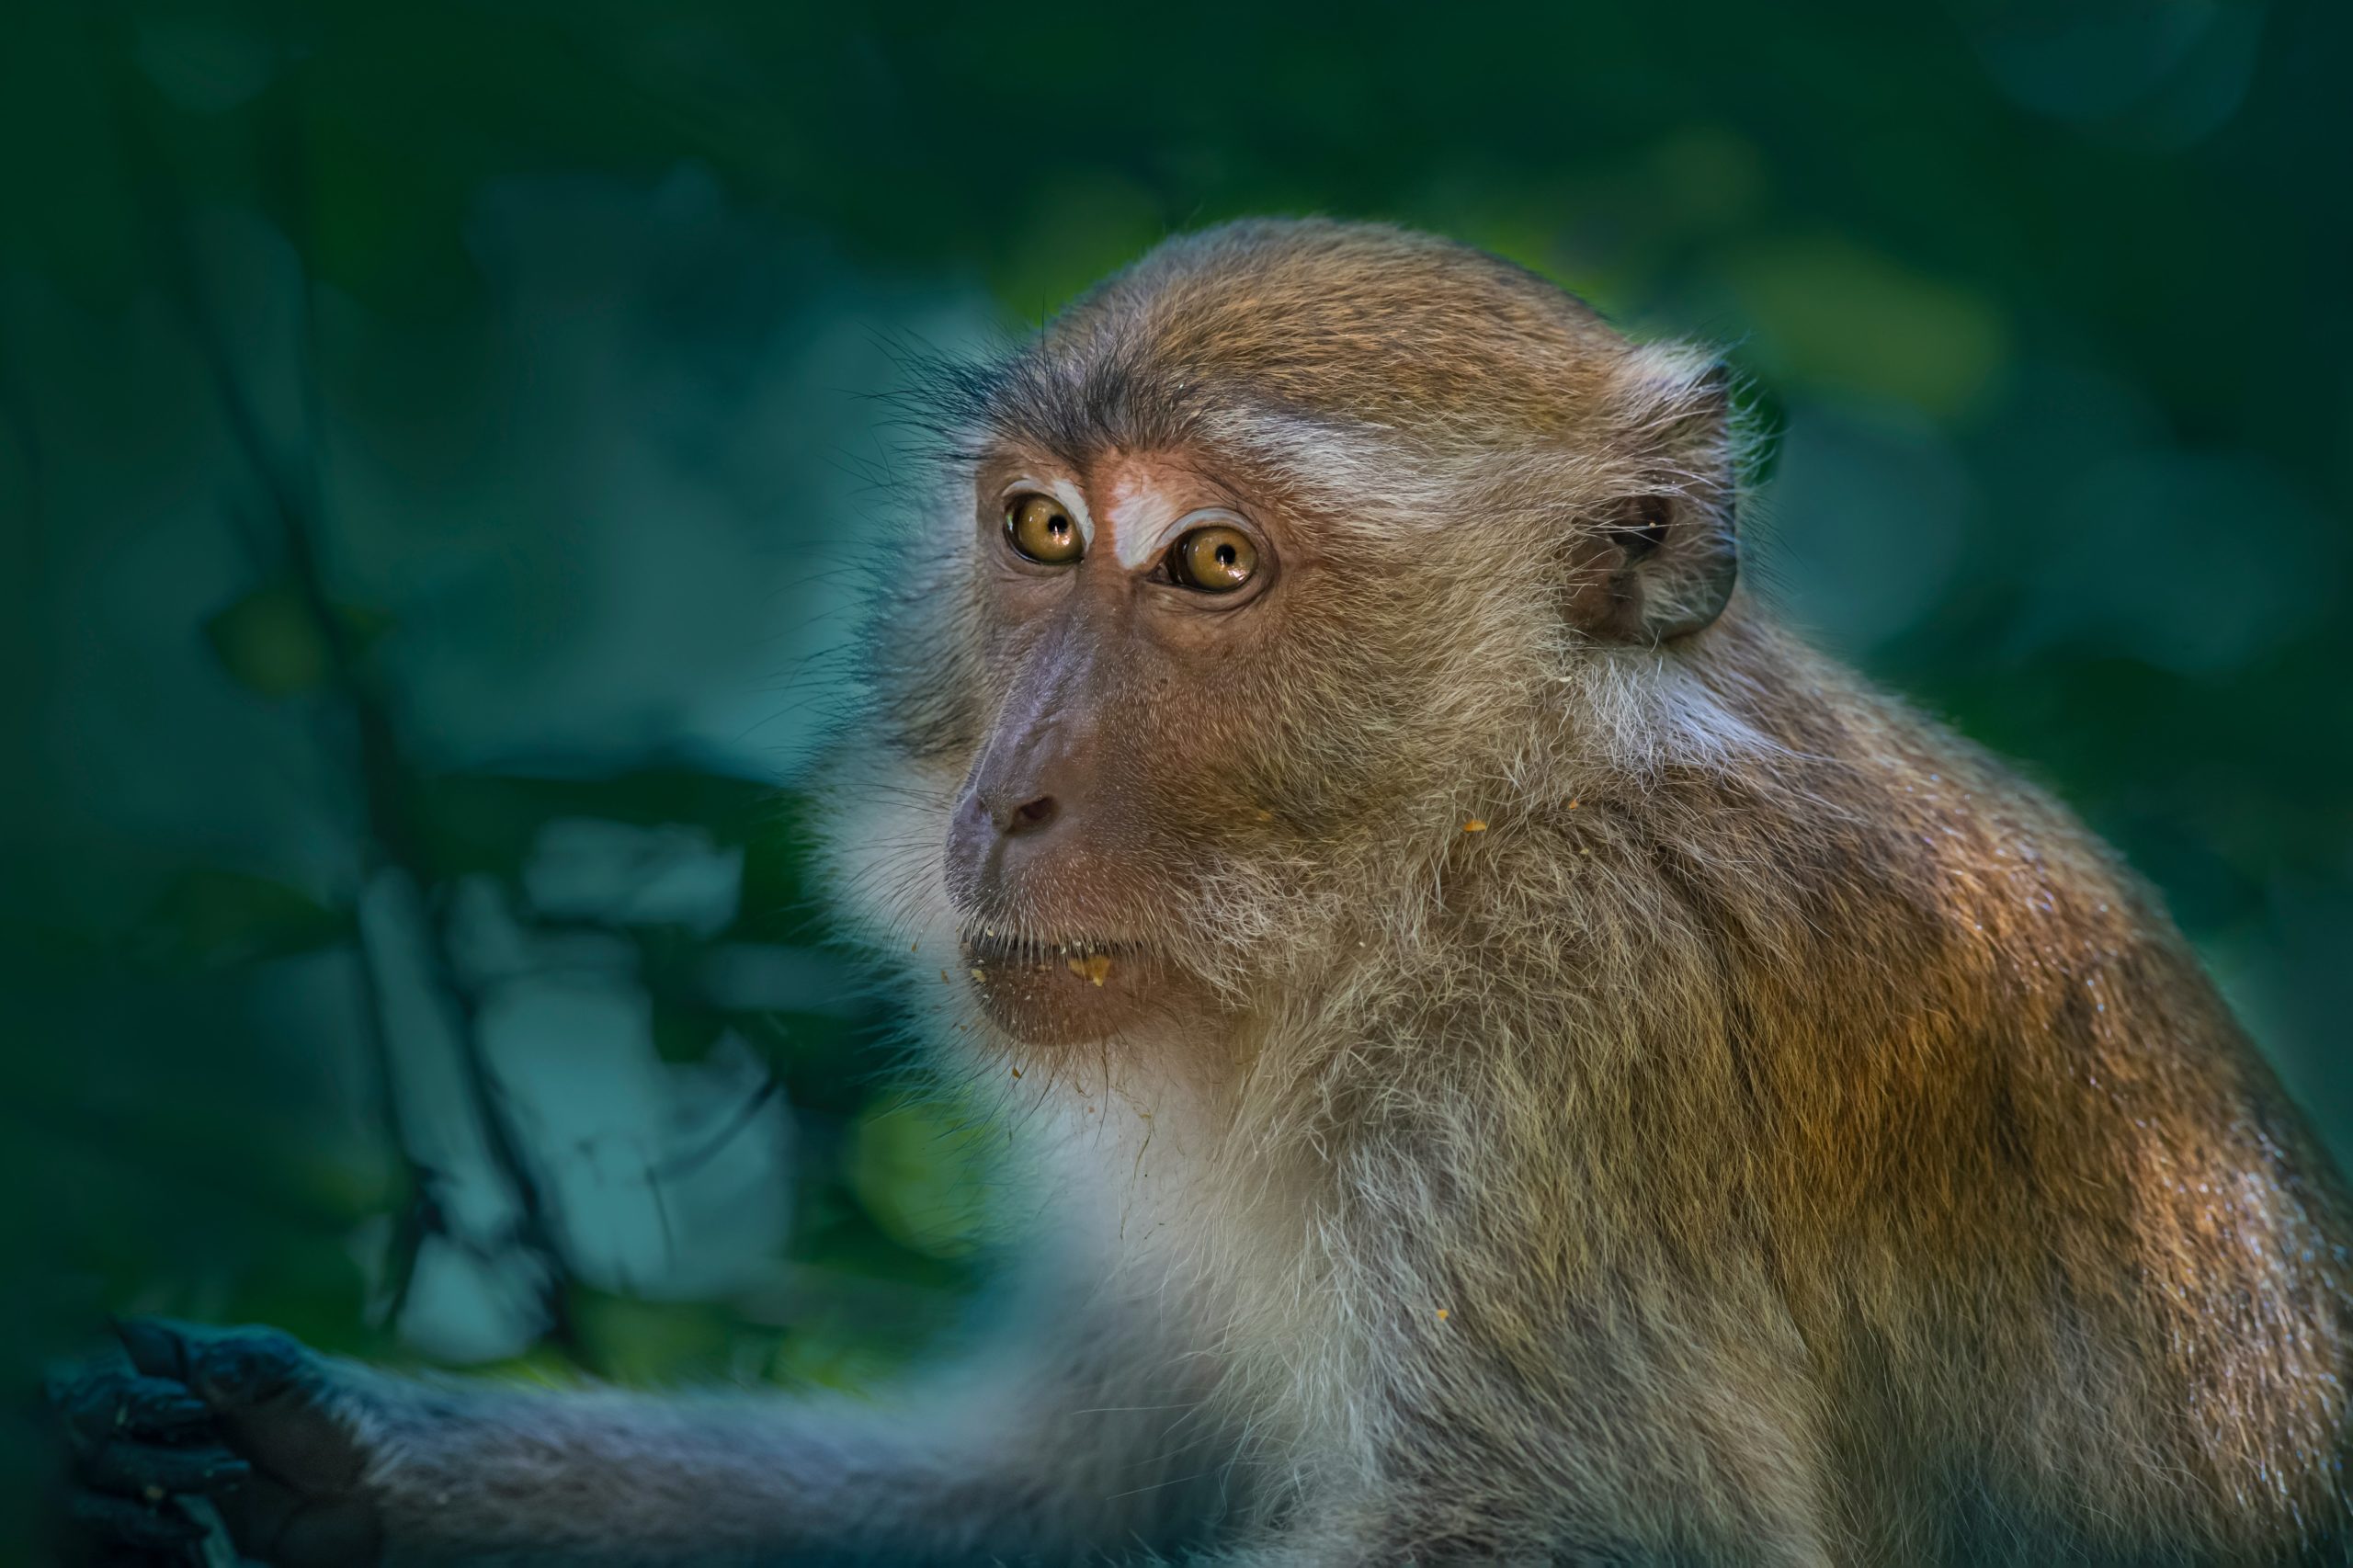 I primati non umani nella ricerca scientifica: qualche considerazione su legislazione, benessere e conservazione